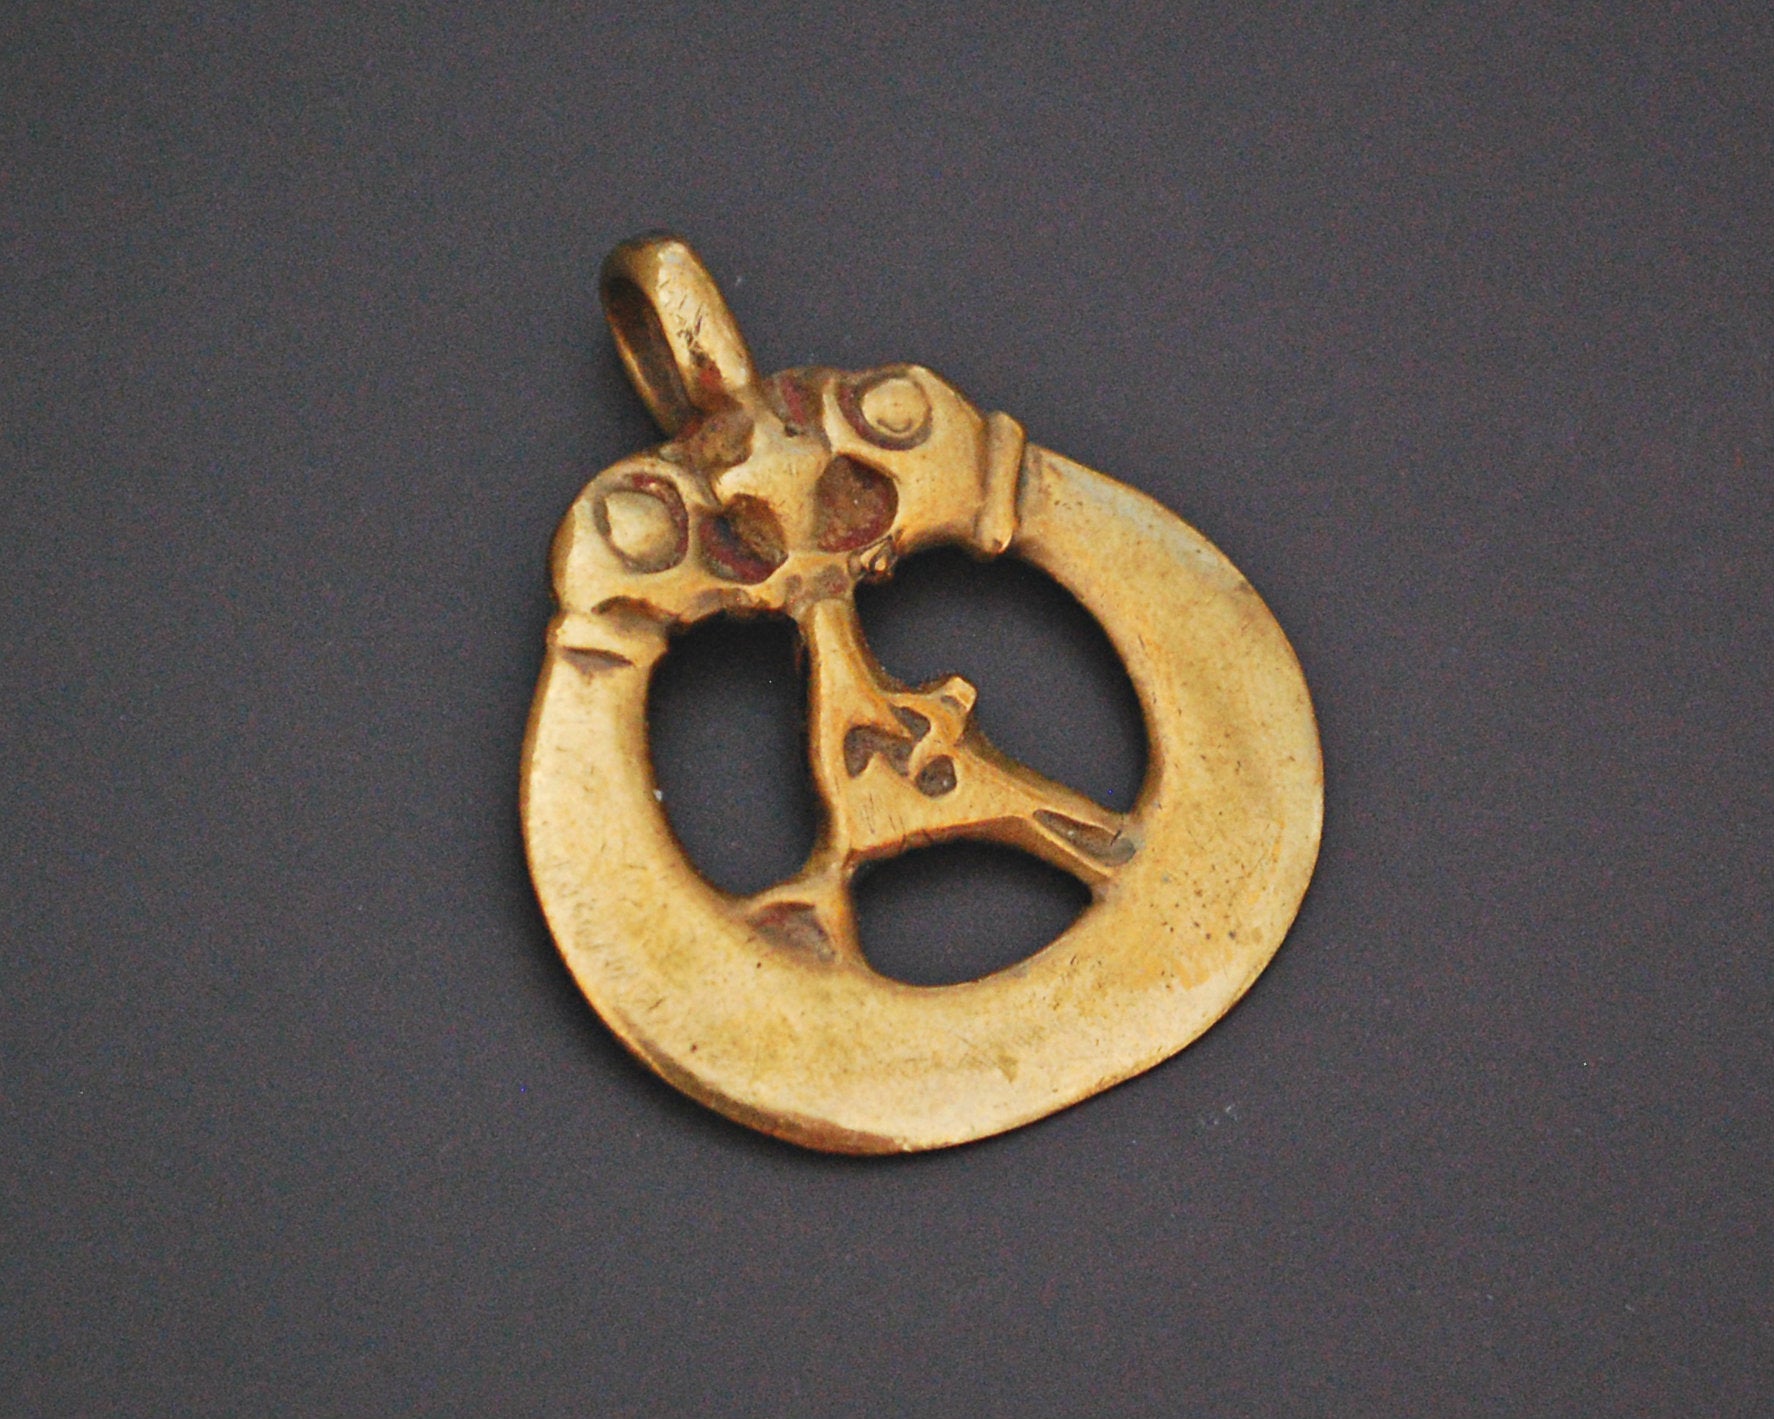 Ethnic Snake Naga Brass Amulet Pendant - Doublesided